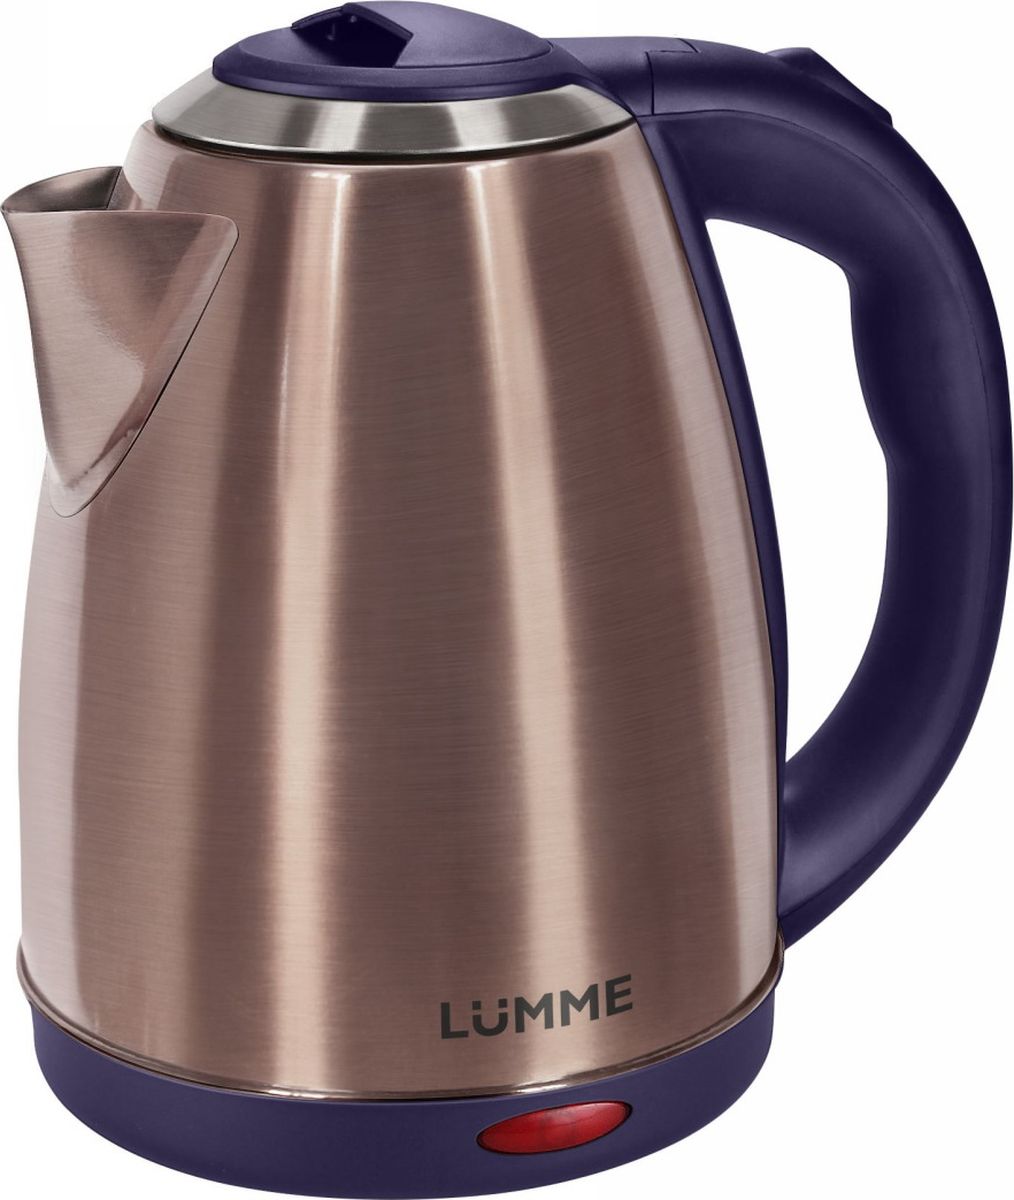 Lumme LU-132, Dark Zirconia чайник электрический